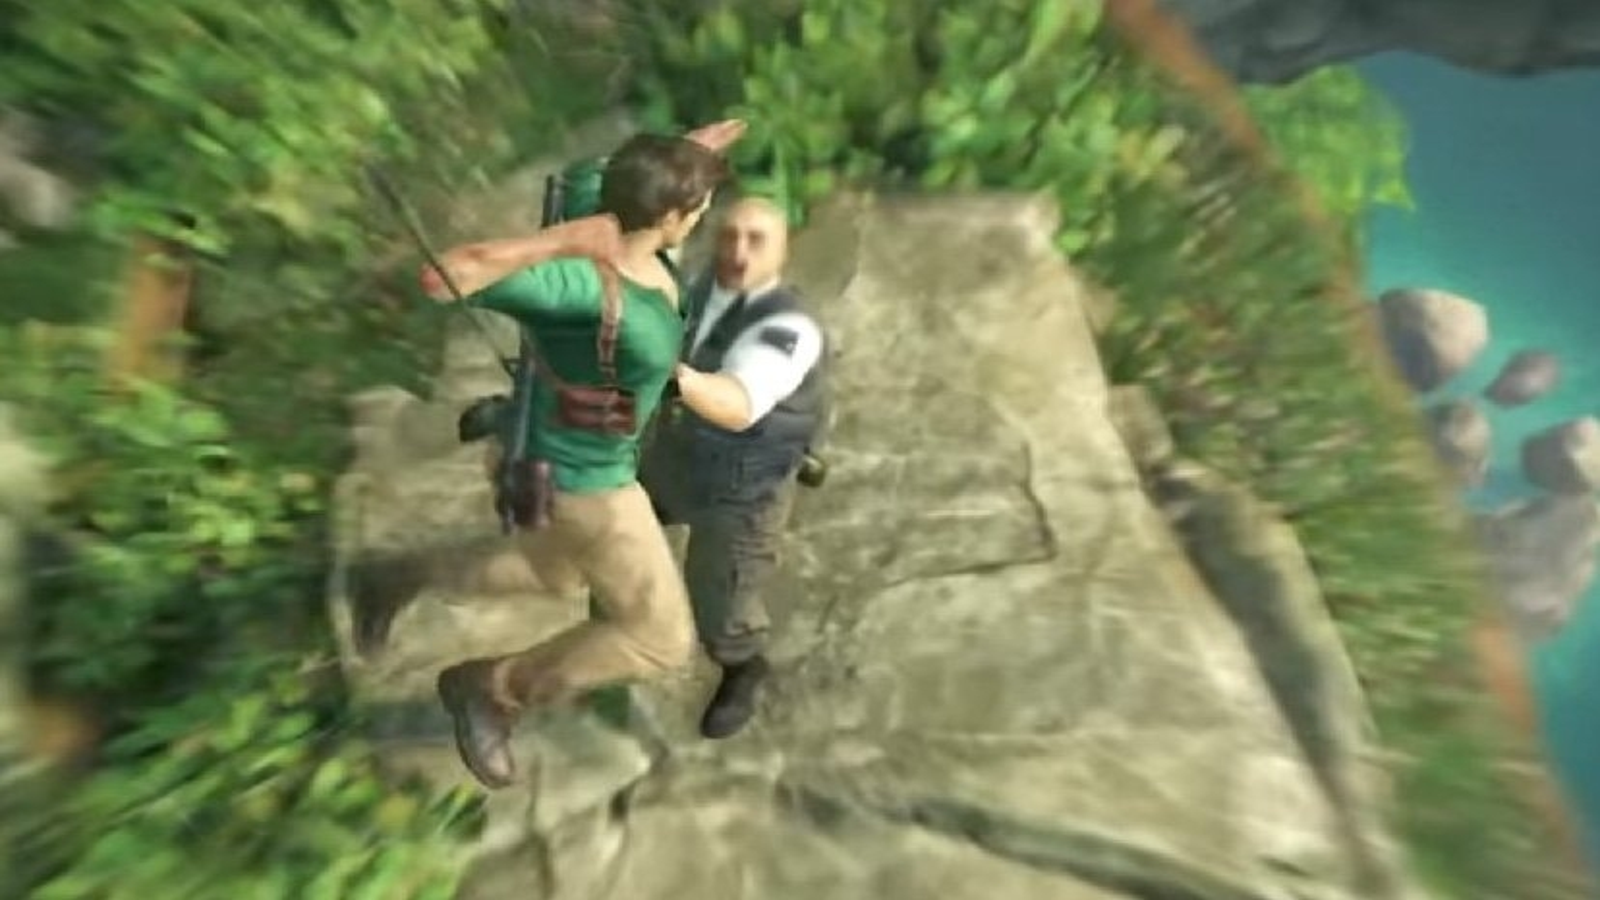 Saiba tudo sobre o beta do multiplayer de Uncharted 4: A Thief's End